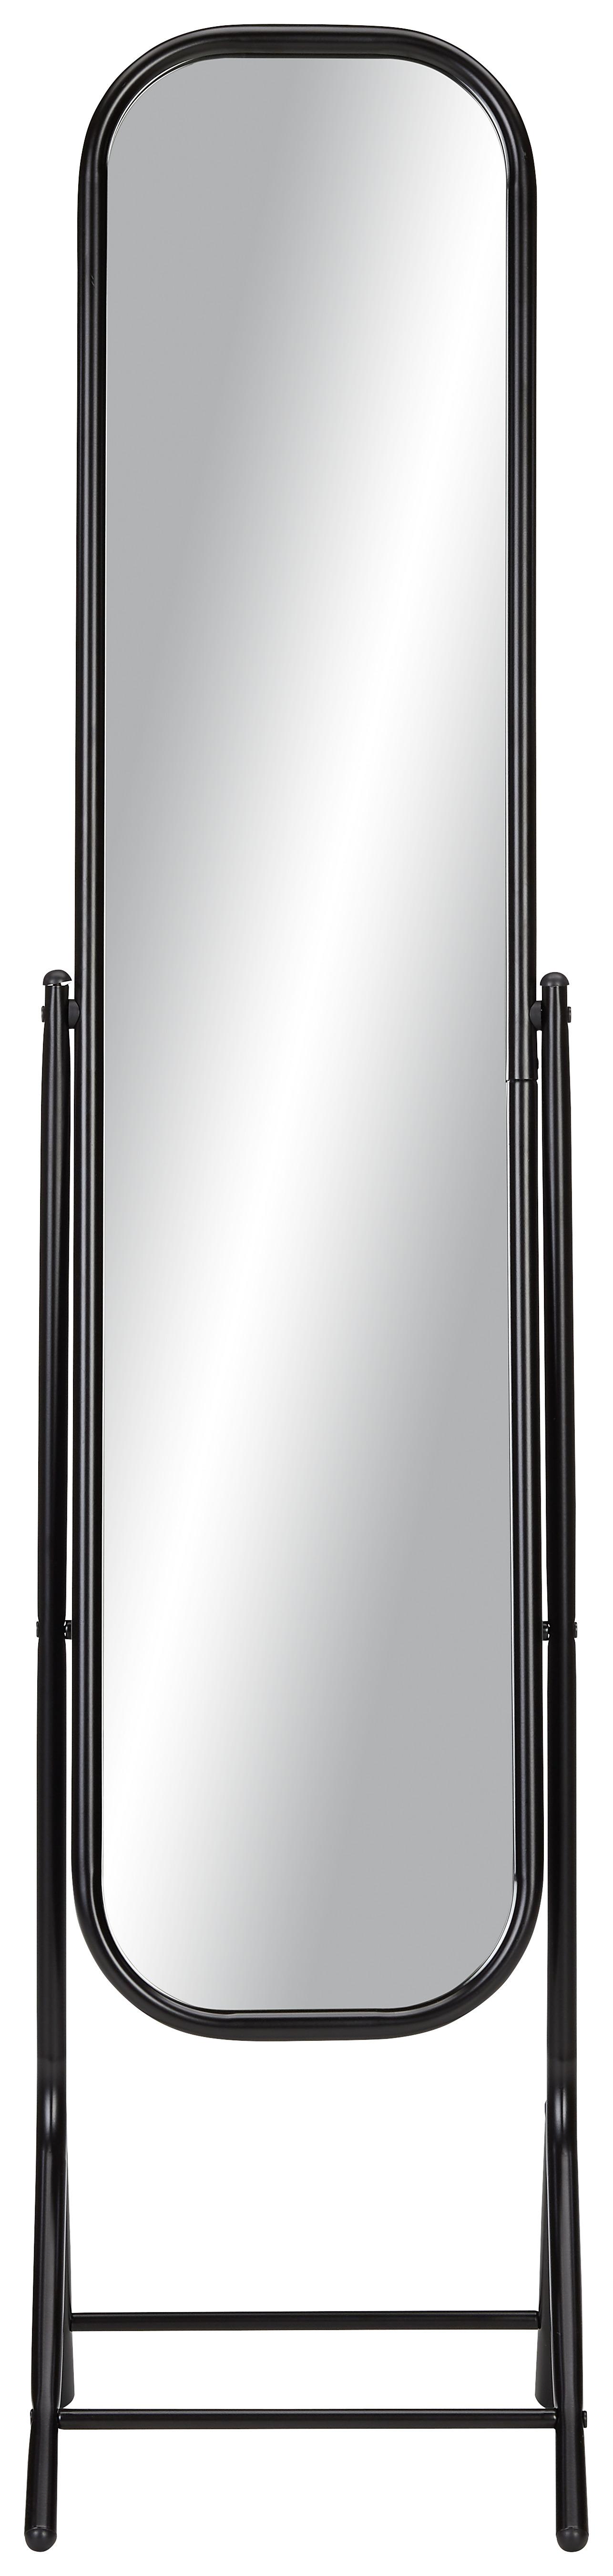 Standspiegel in Schwarz - Schwarz, MODERN, Glas/Metall (41/149/33cm) - Modern Living